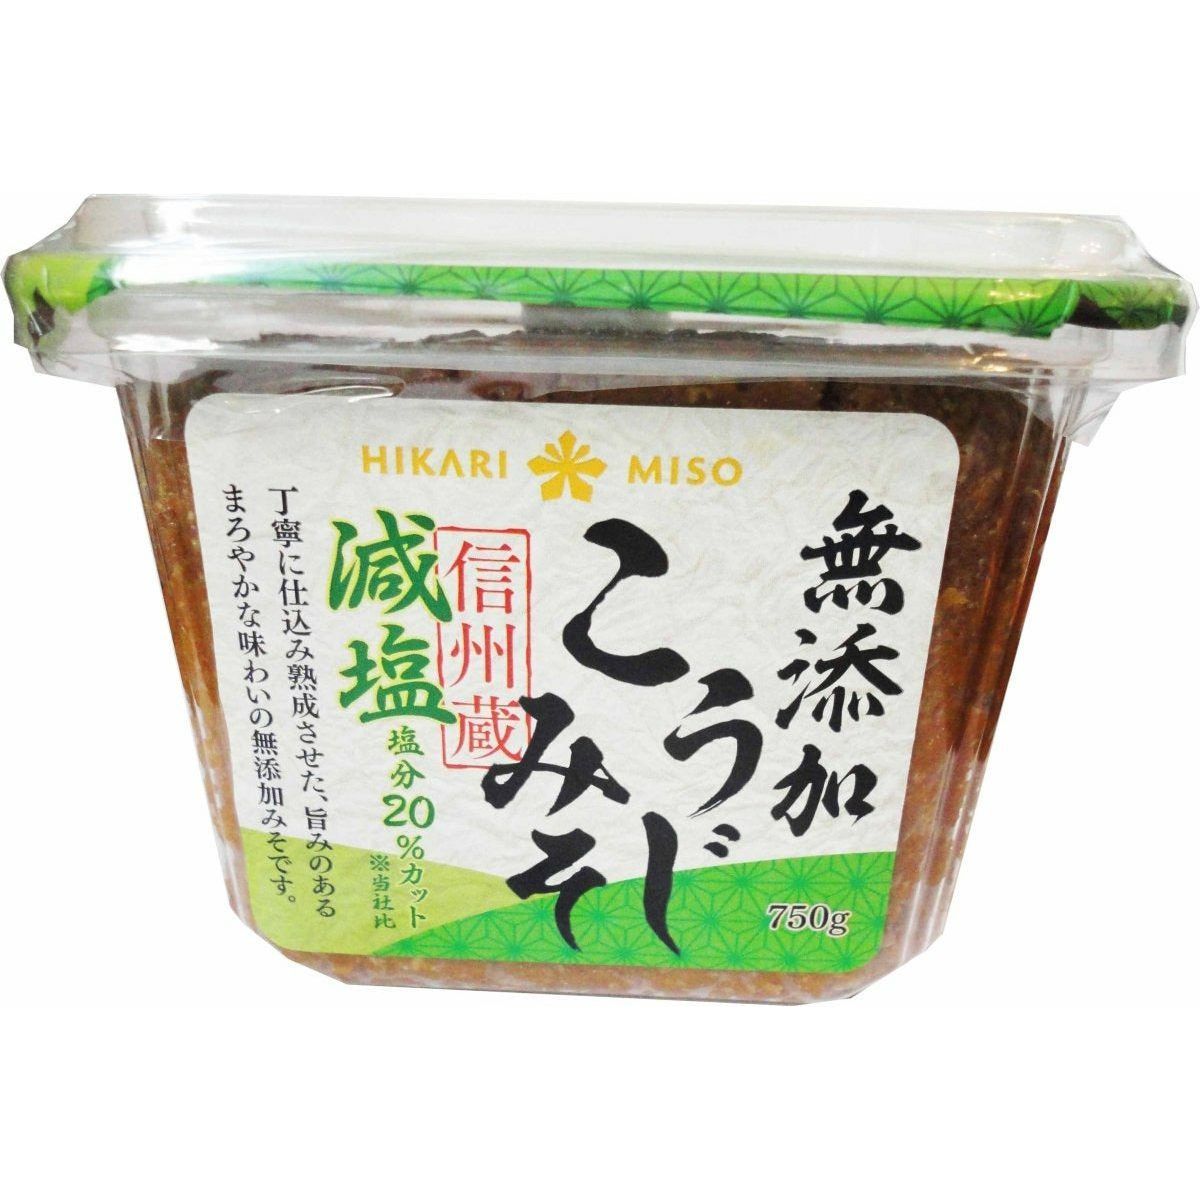 Hikari Shinshuzo additive-free koji miso reduced salt 750g ひかり　信州蔵　無添加こうじみそ　減塩 - RiceWineShop